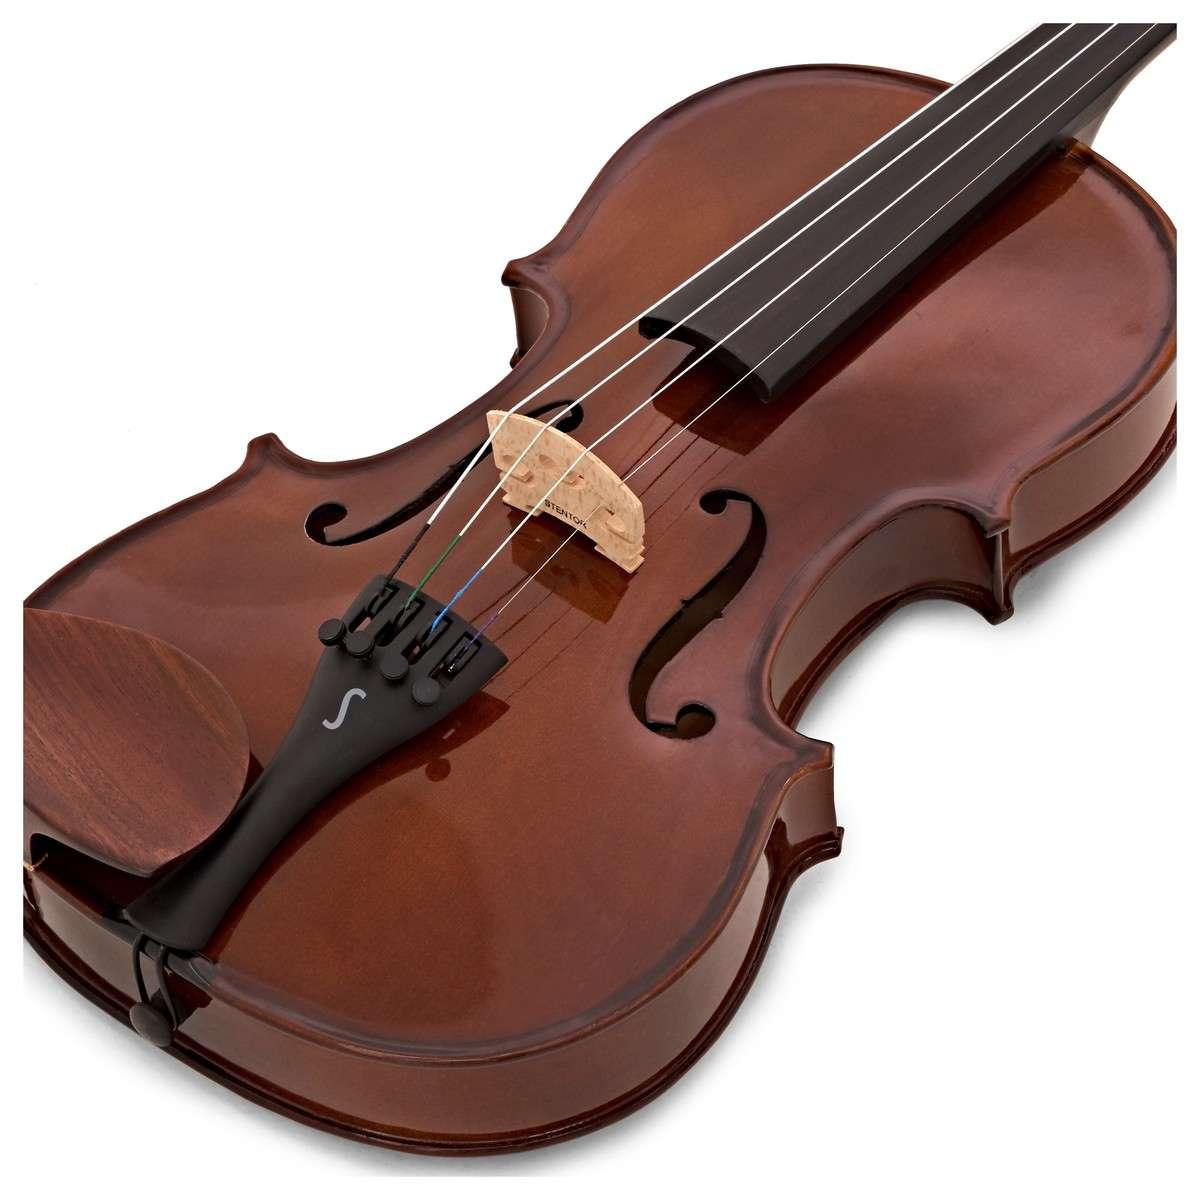 Stentor student i violino 3/4 con custodia ed archetto